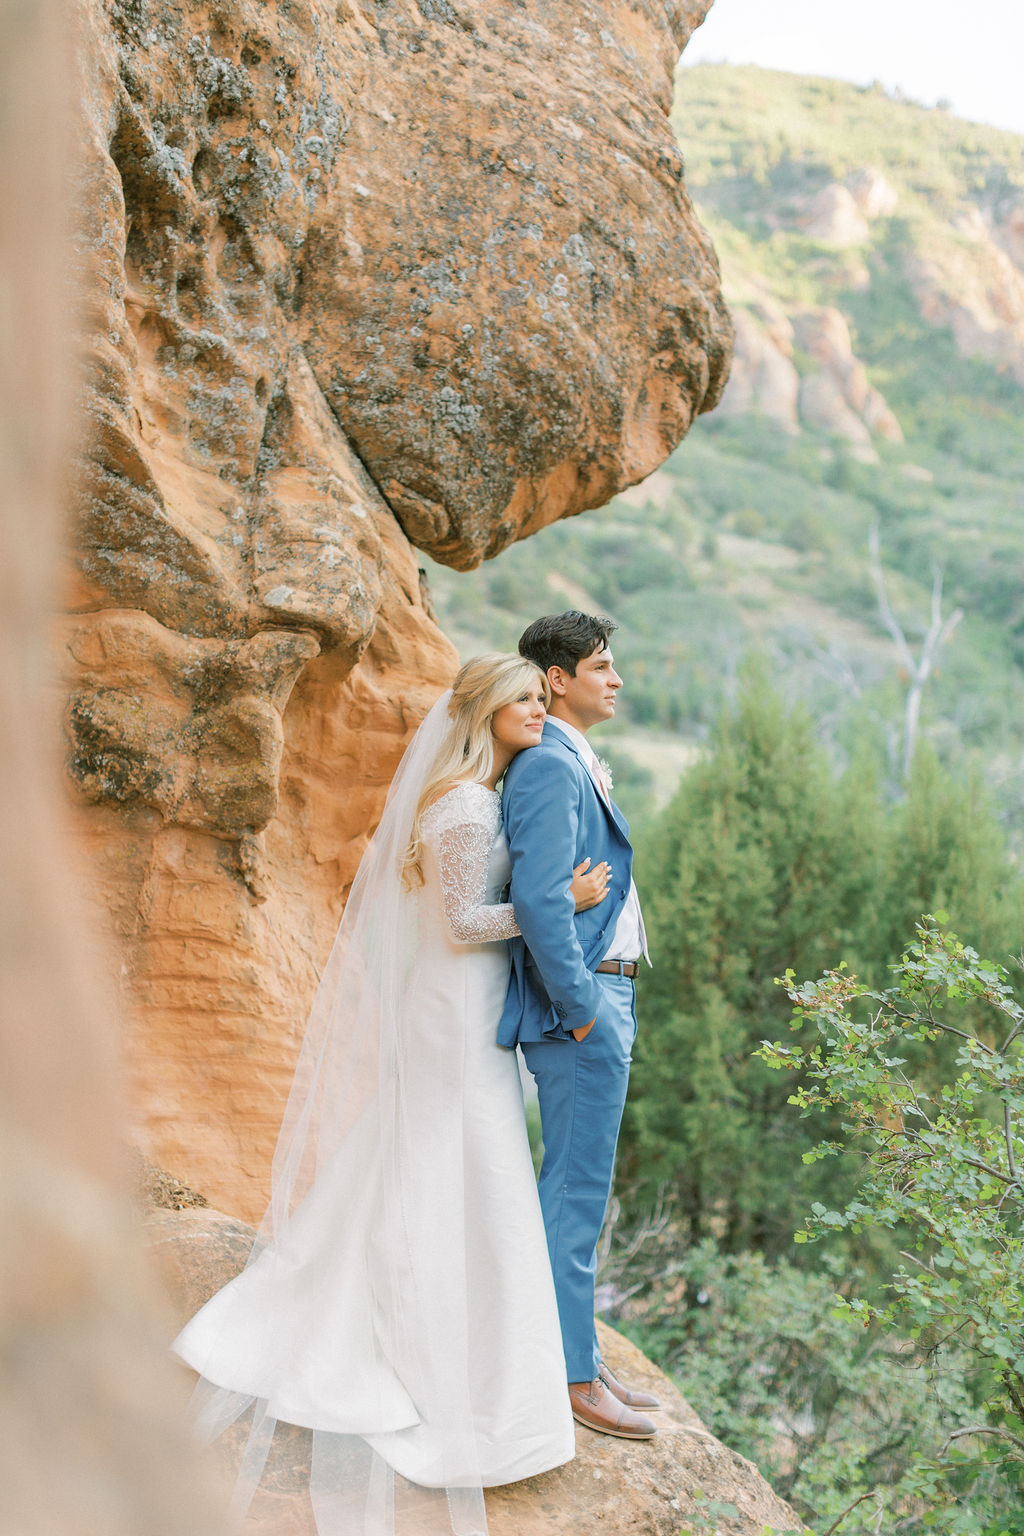 Red Rocks + Romance in Utah